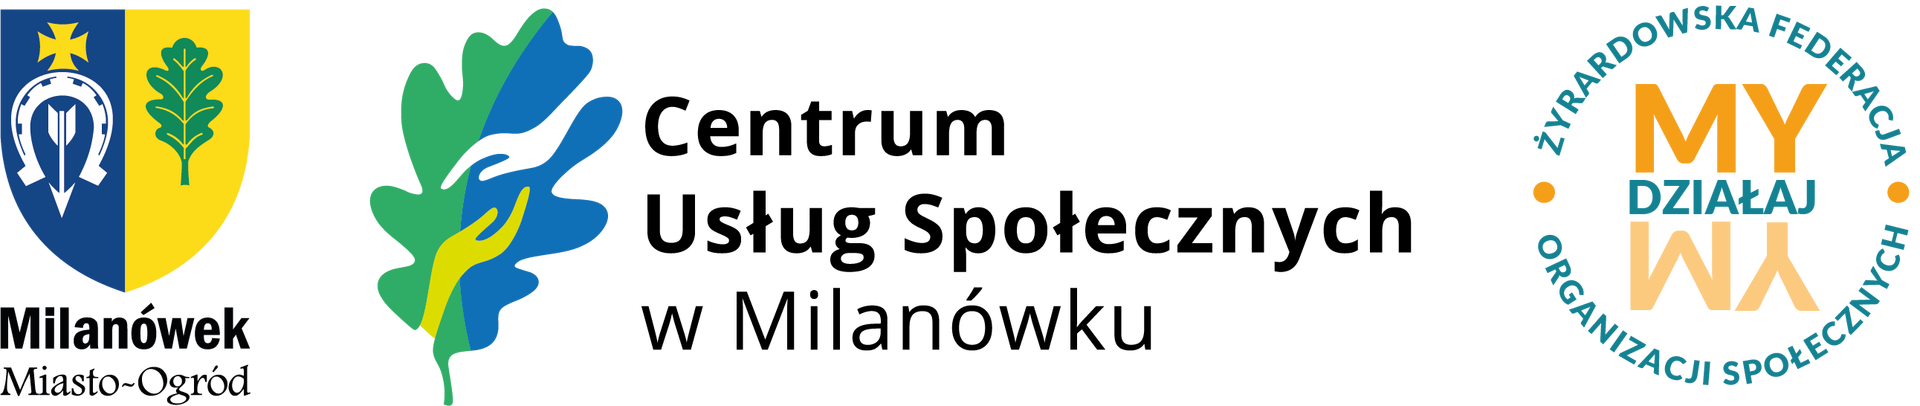 Herb miasta, logo CUS, logo fundacji DziałaMy